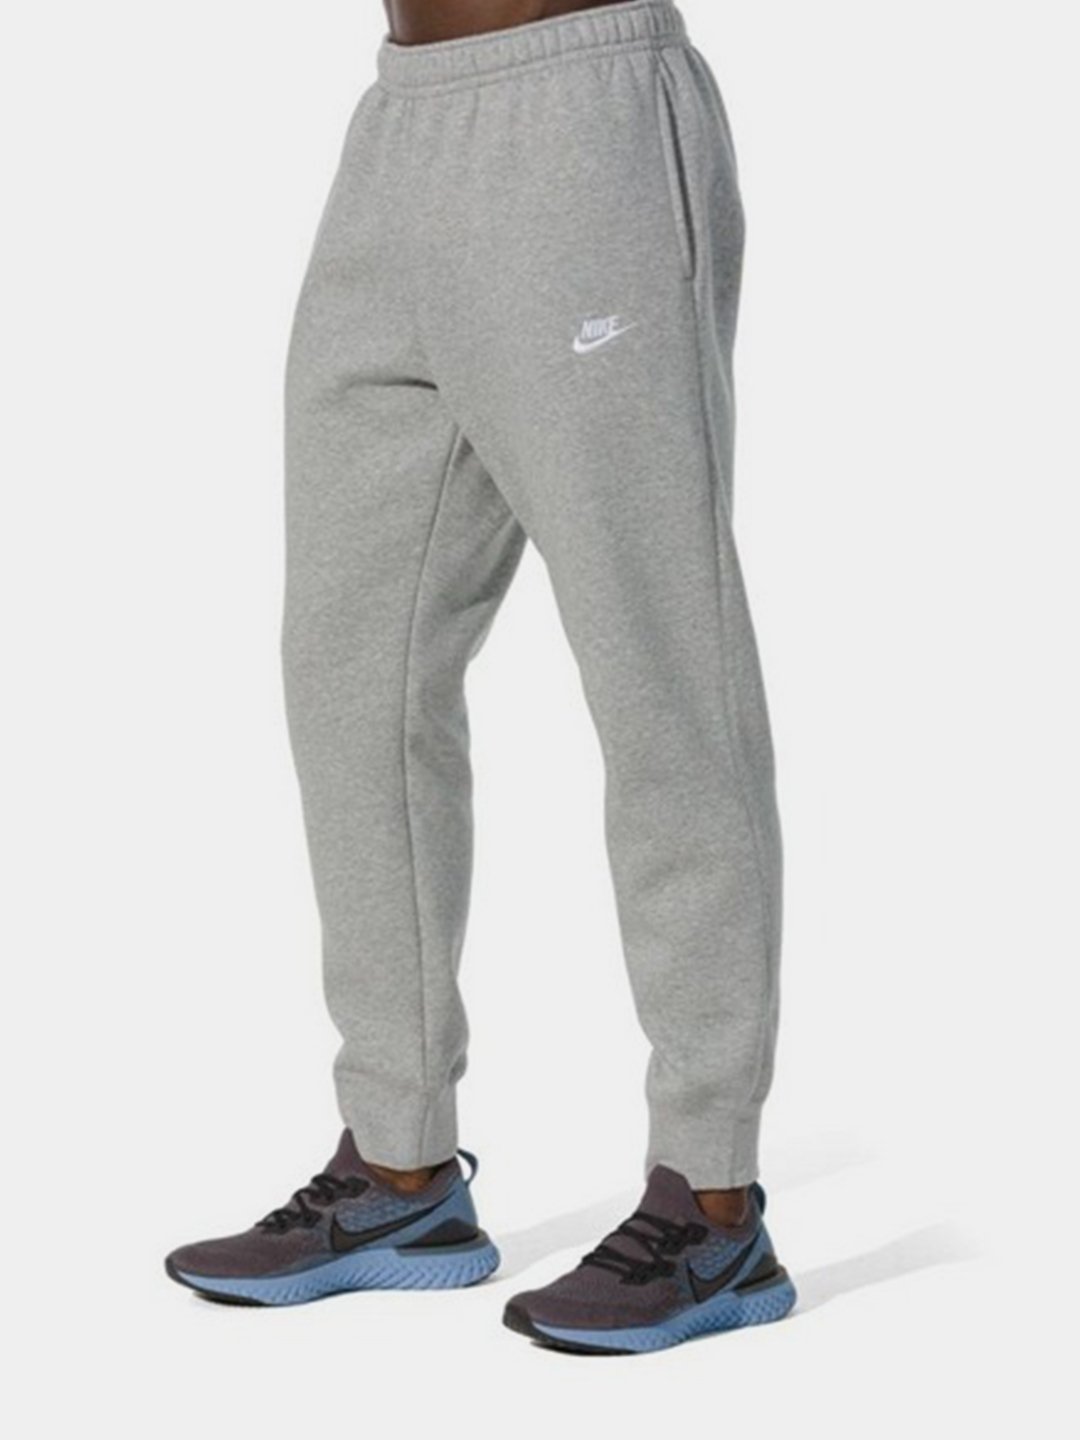 Брюки джоггеры Nike спортивные мужские купить по цене 5749 ₽ винтернет-магазине KazanExpress